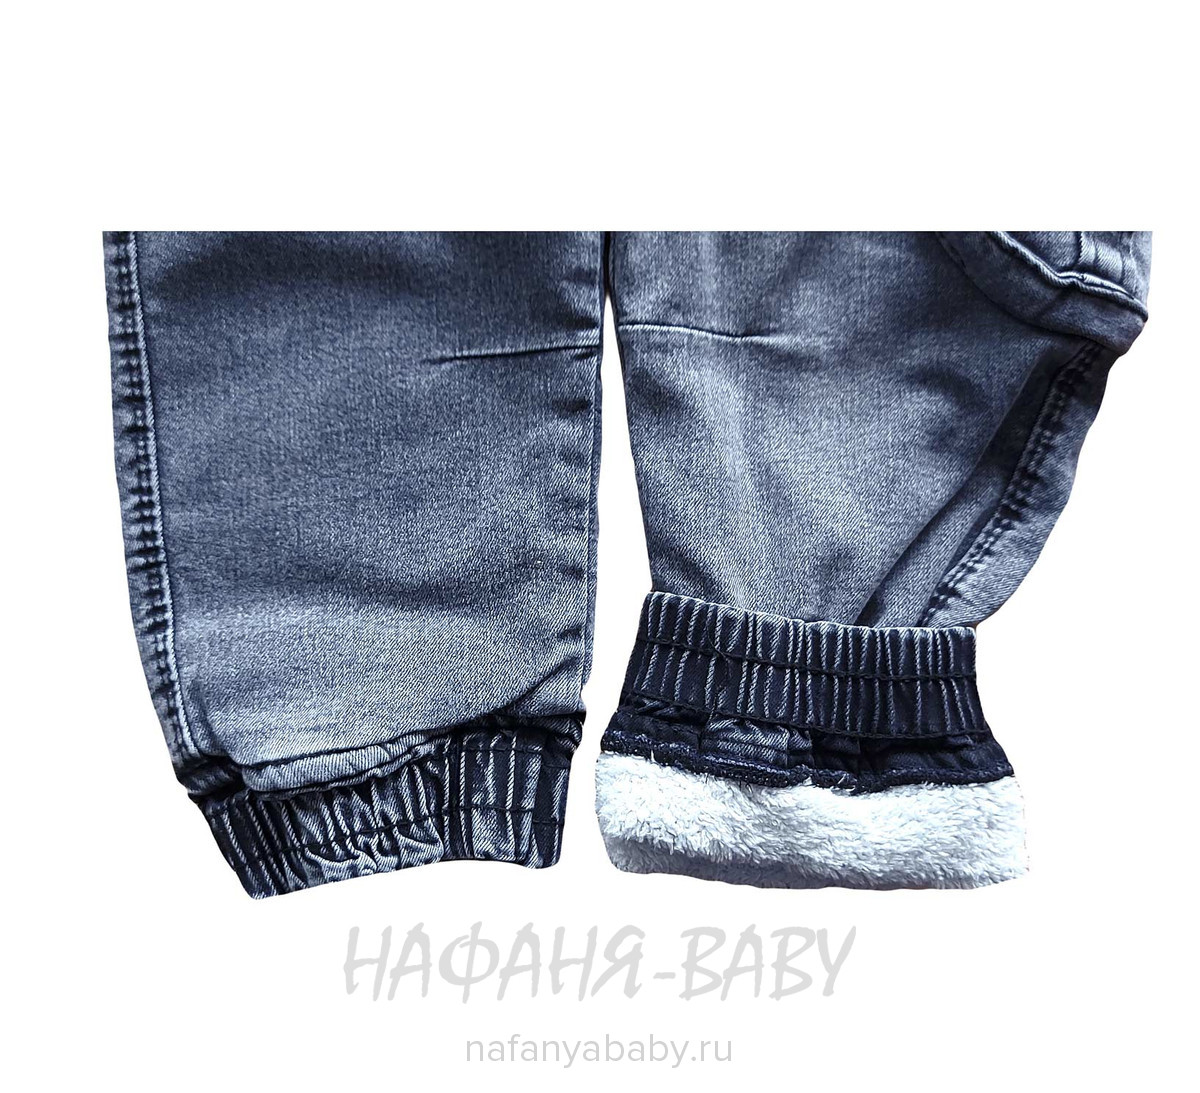 Теплые джинсы RIDAYEN, купить в интернет магазине Нафаня. арт: 1424.